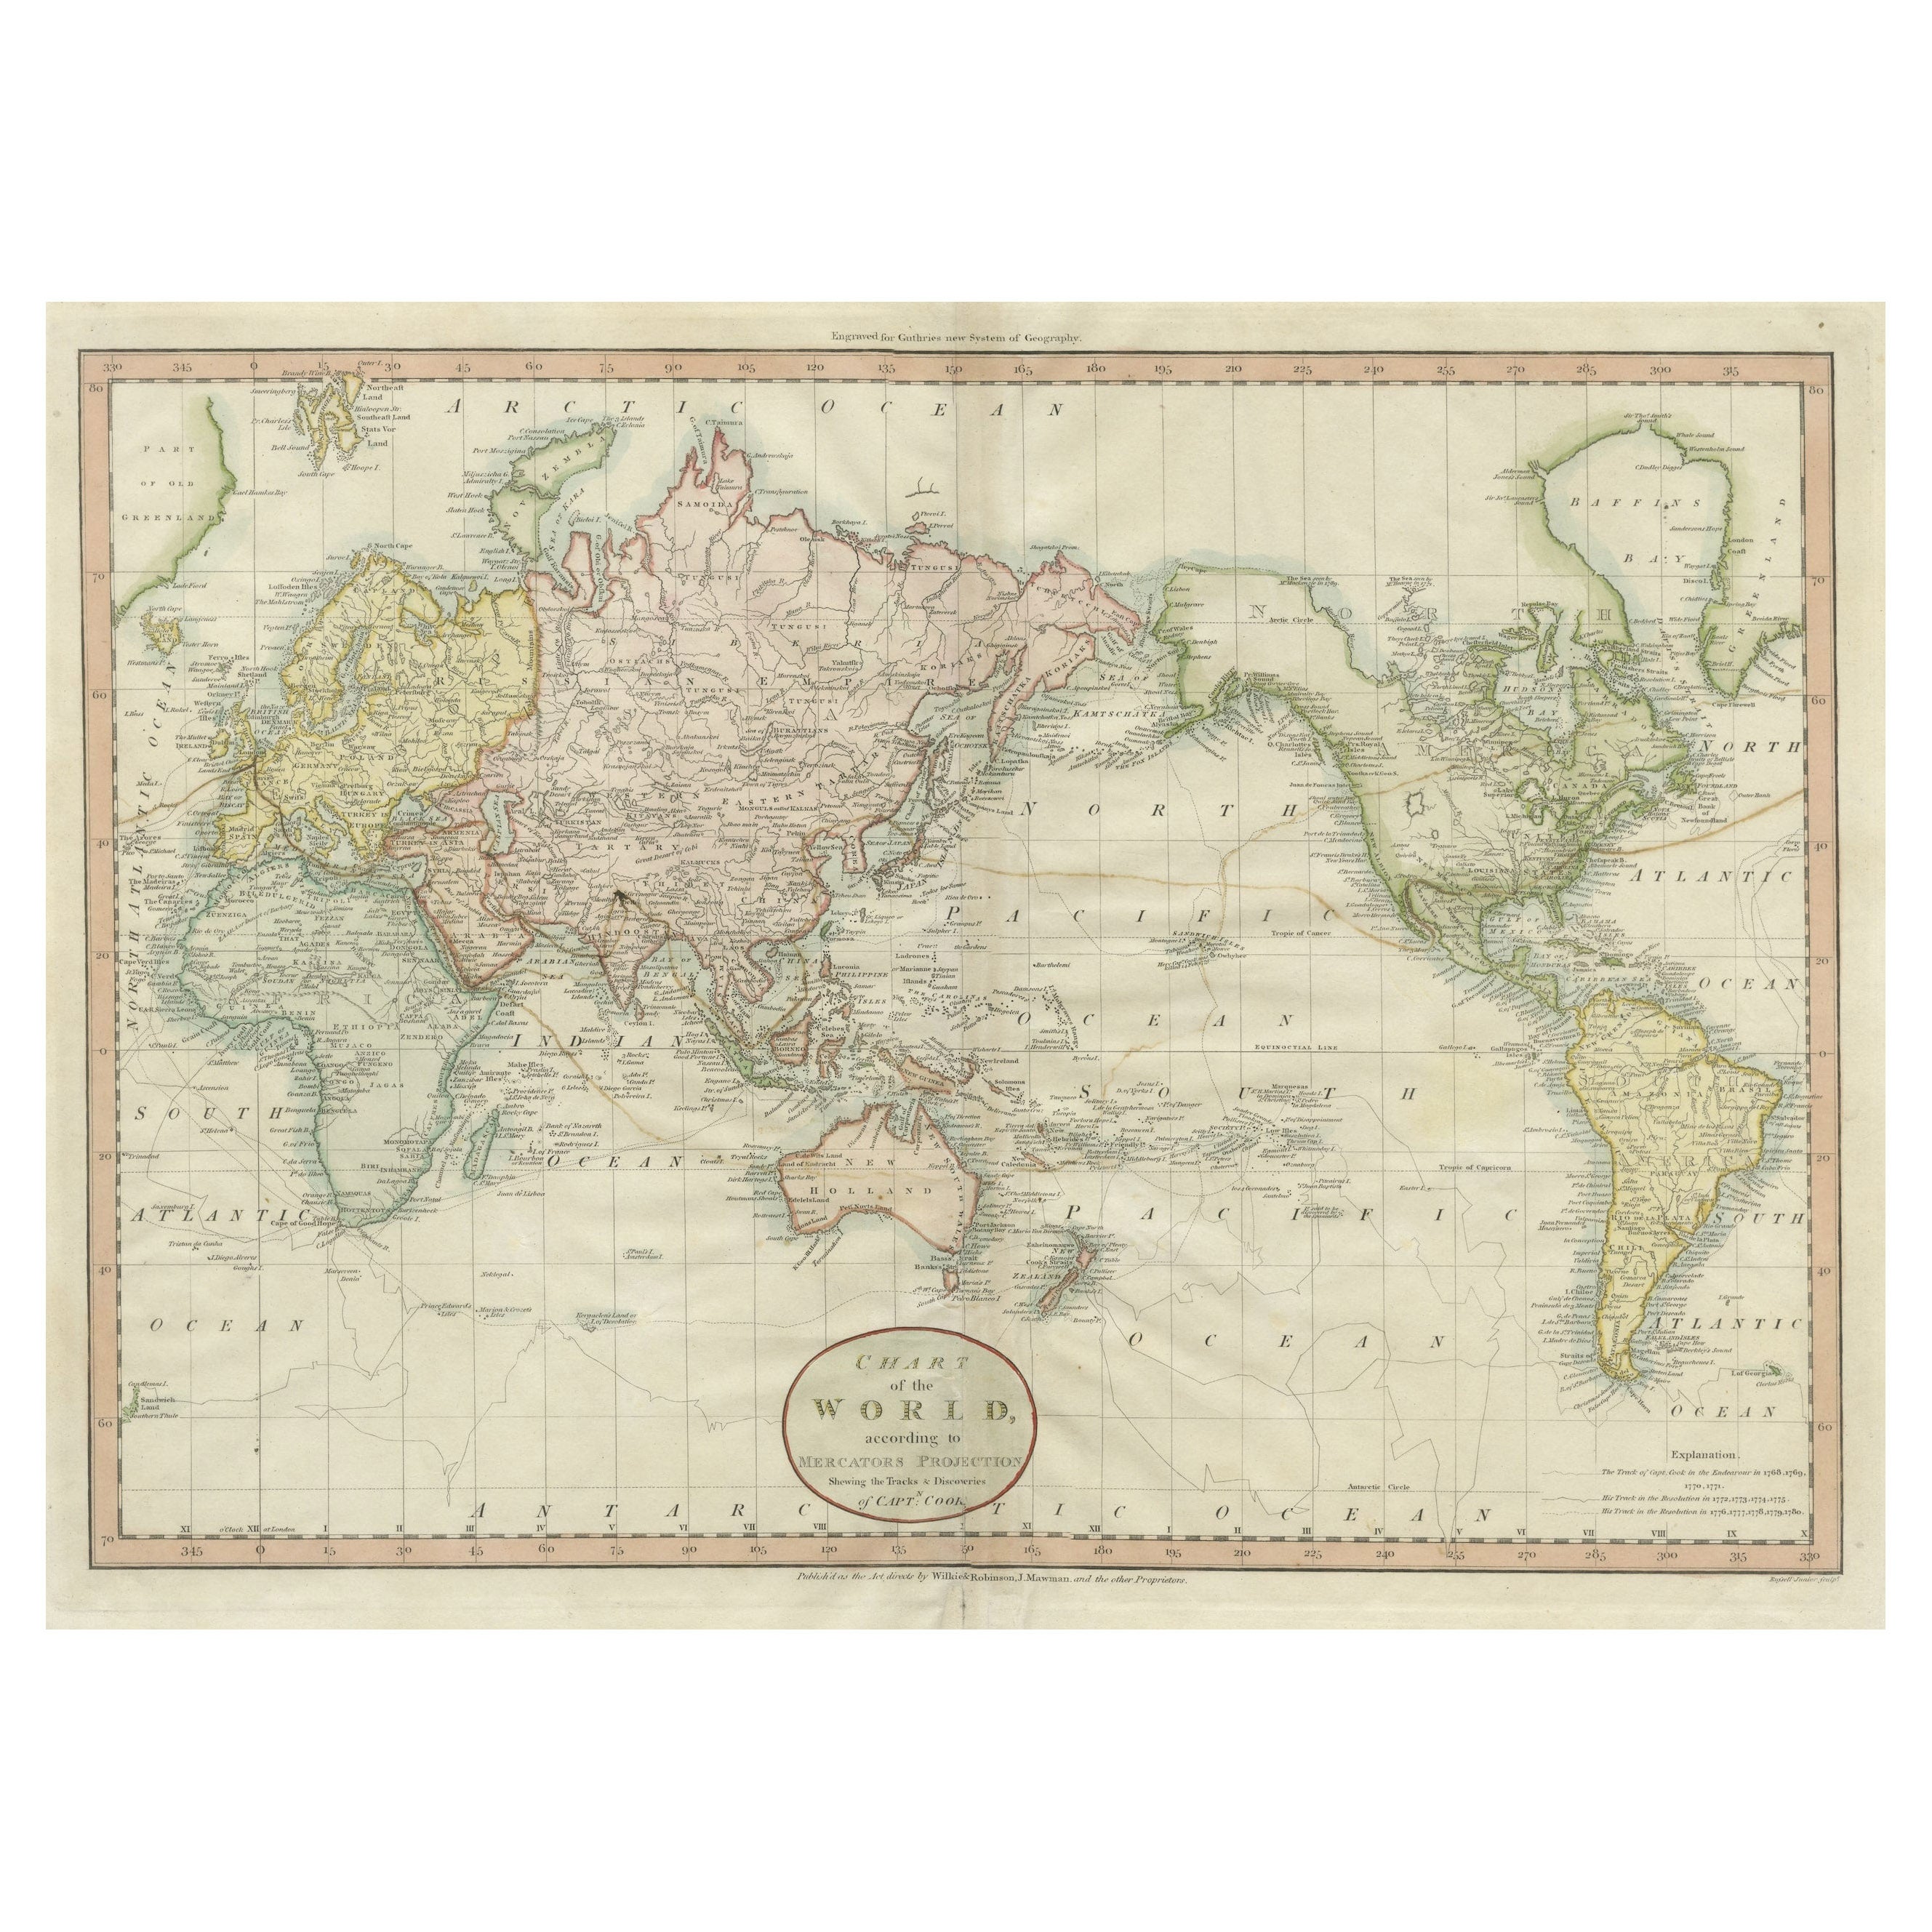 Sehr attraktive antike Weltkarte als Planisphäre, zeigt Cooks Reisen